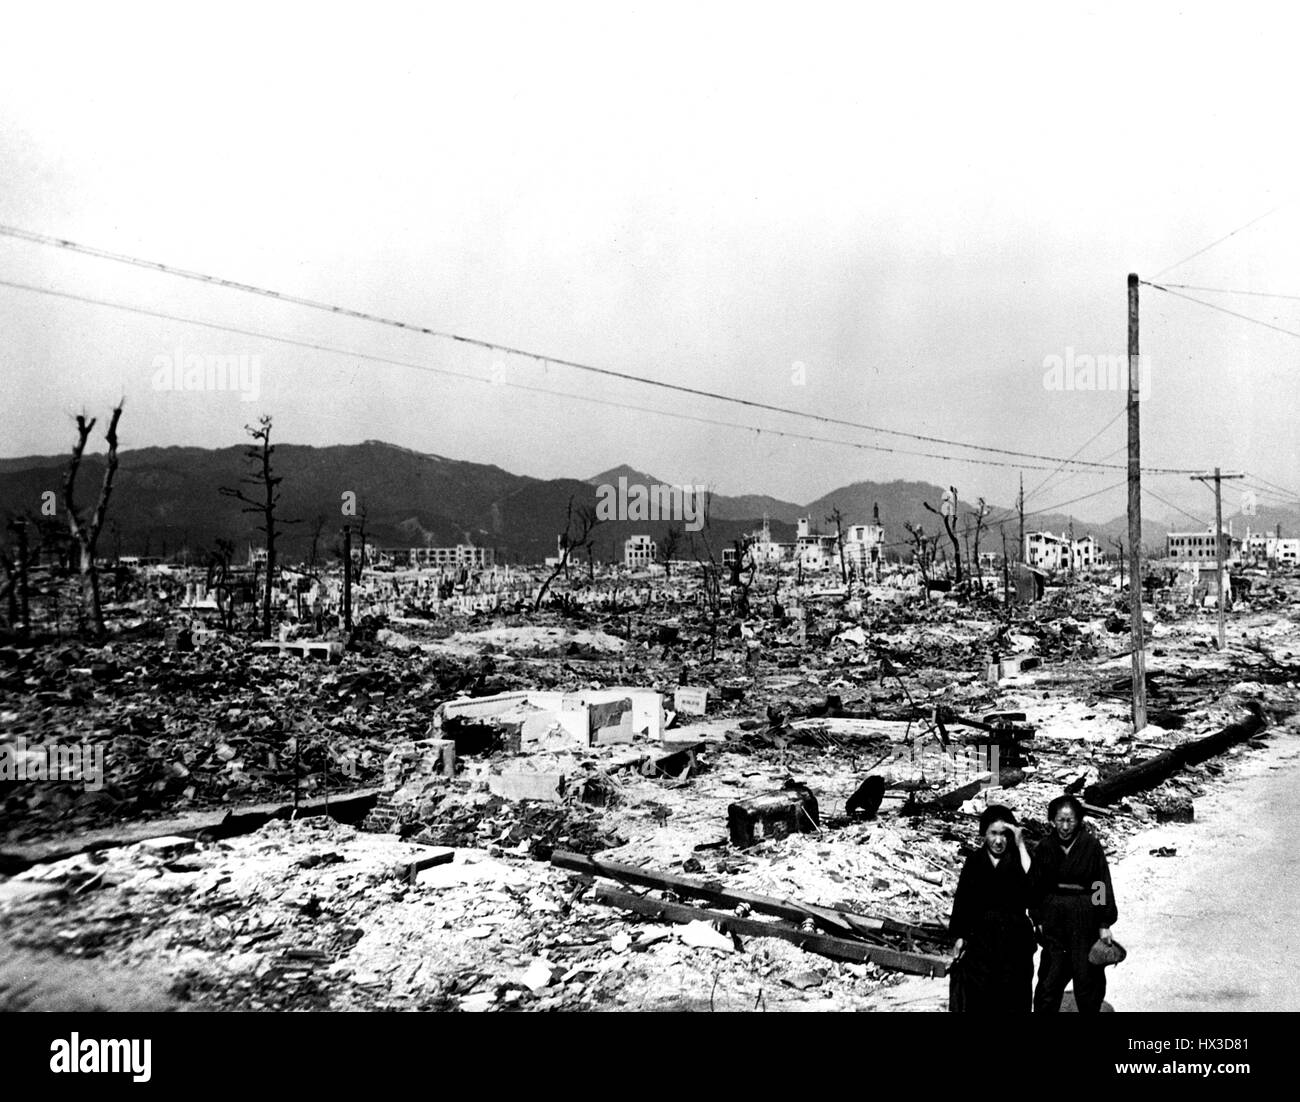 Verwüstung und verfallenen Strukturen Folgen des Atombombenabwurfs auf Hiroshima, Japan, November 1945. Bild mit freundlicher Genehmigung US Department of Energy. Stockfoto